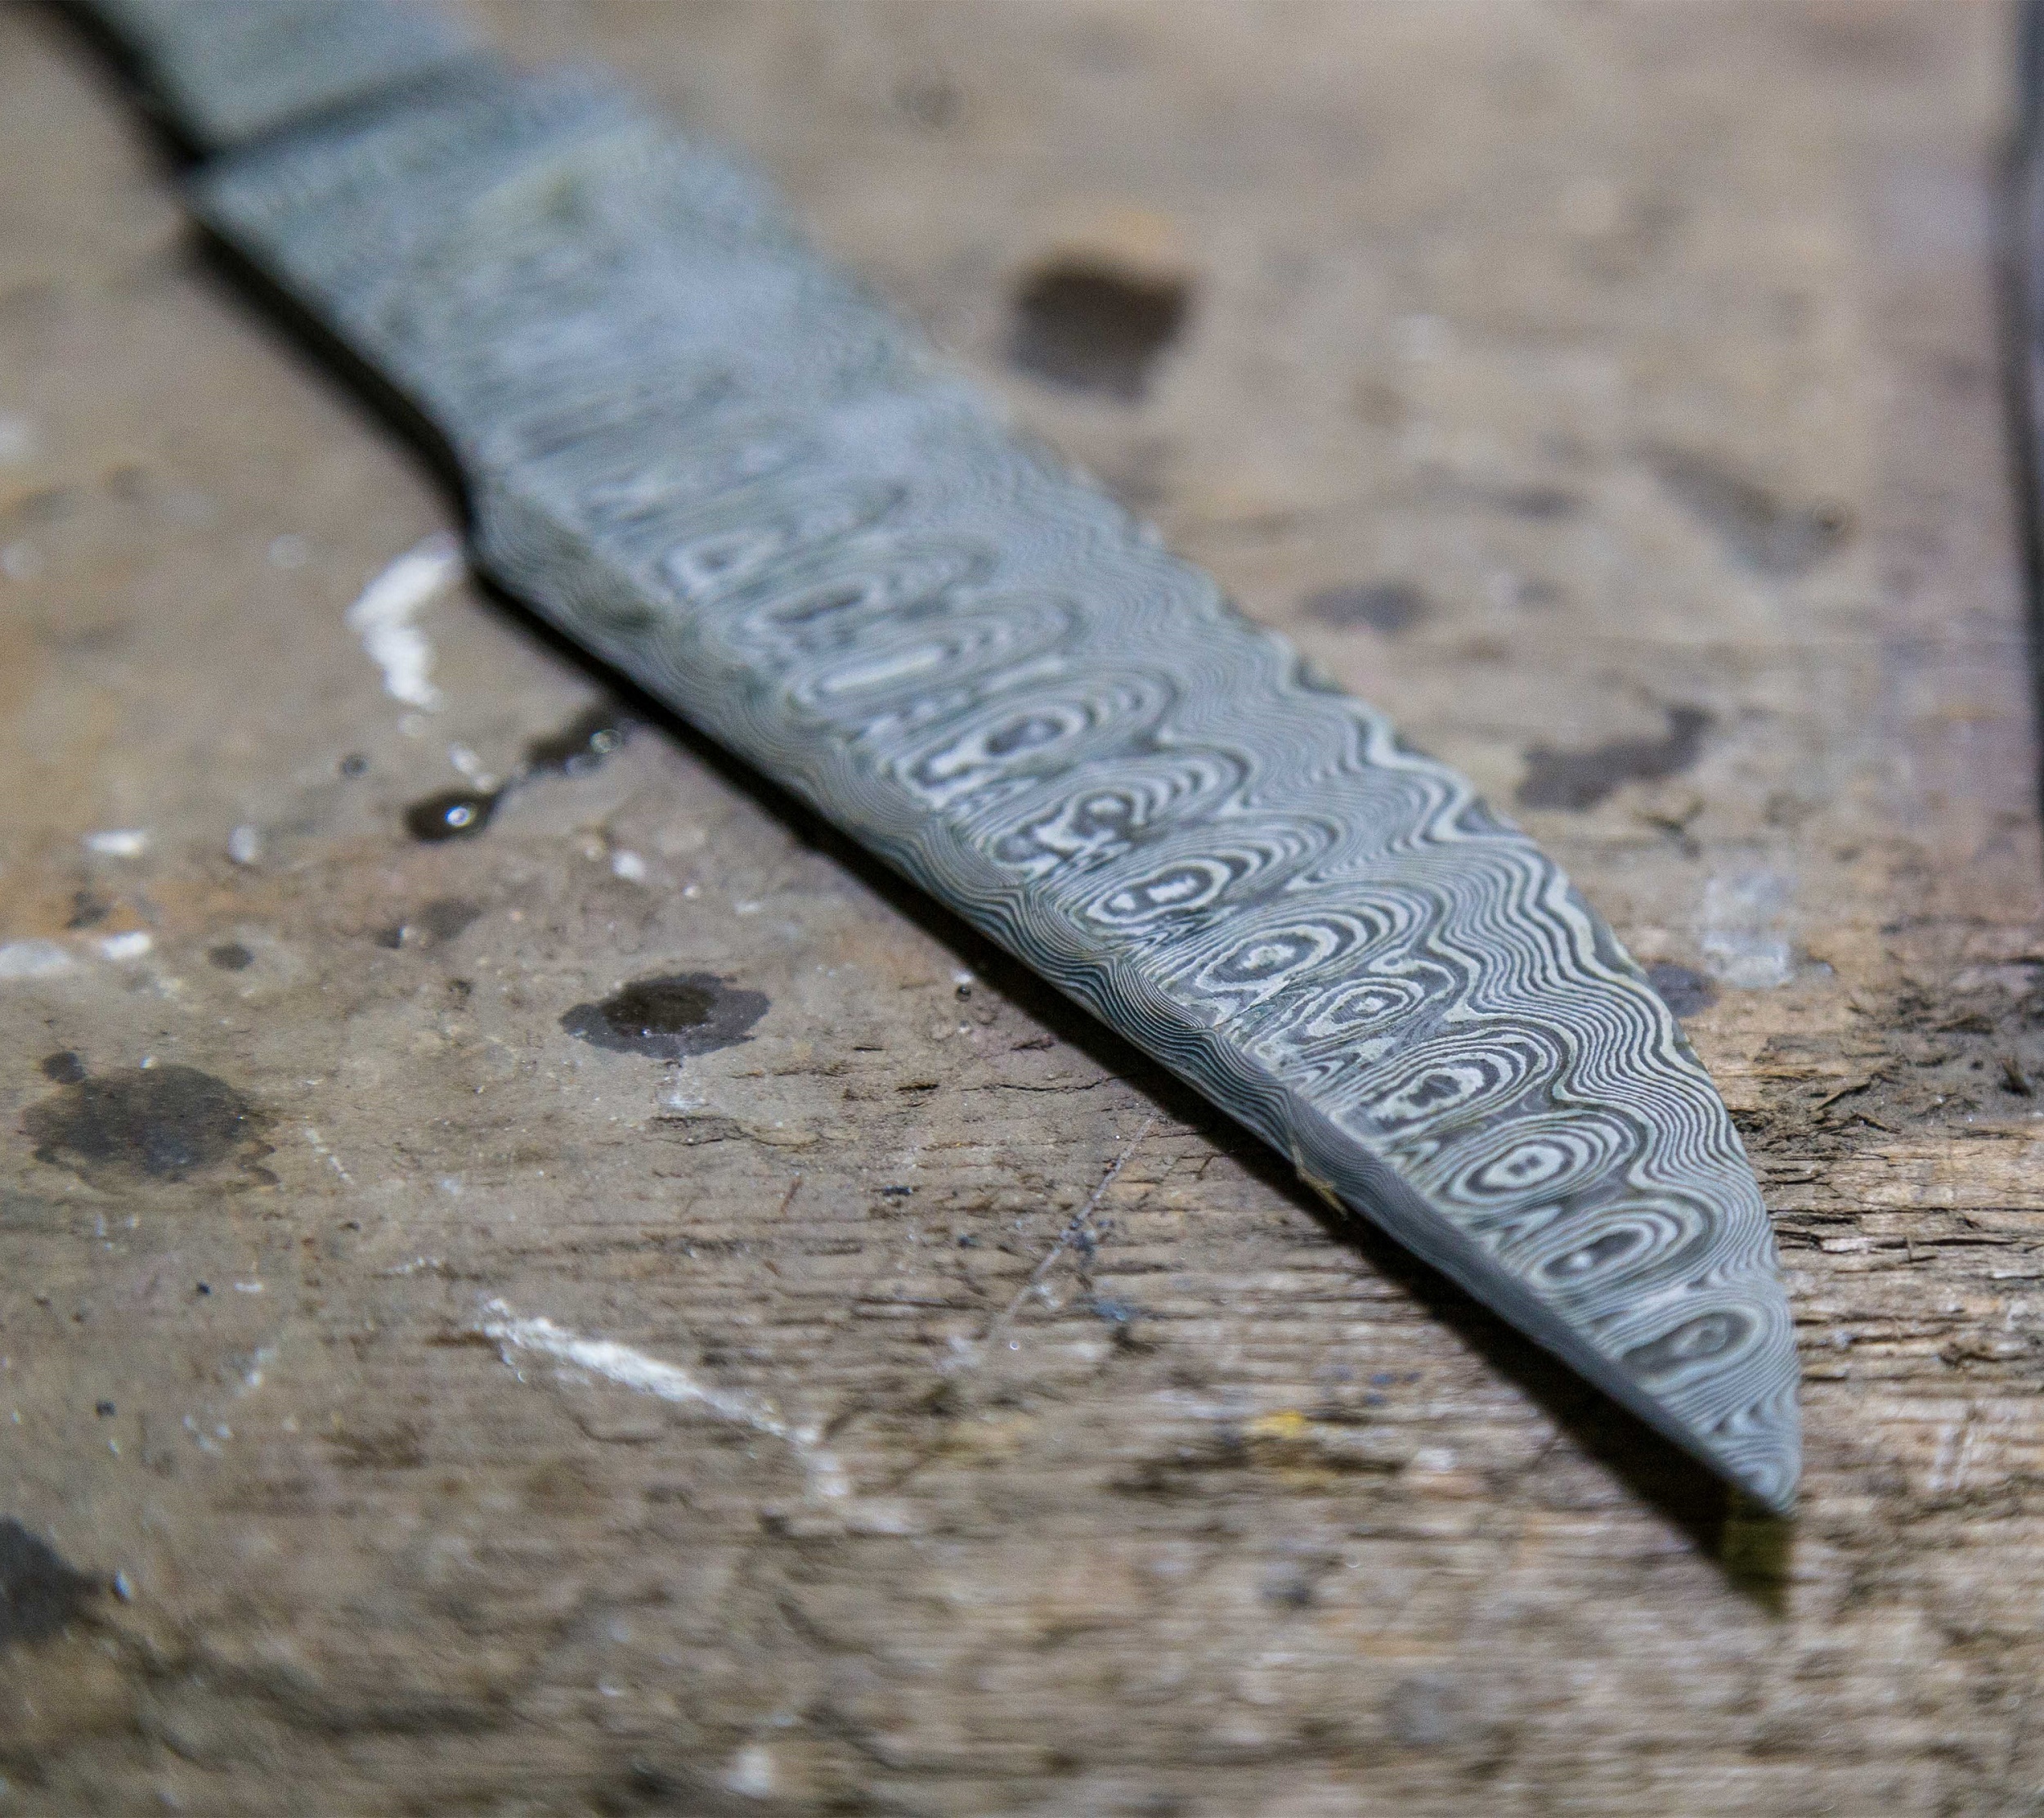 探秘:大马士革刀上的花纹到底是什么?